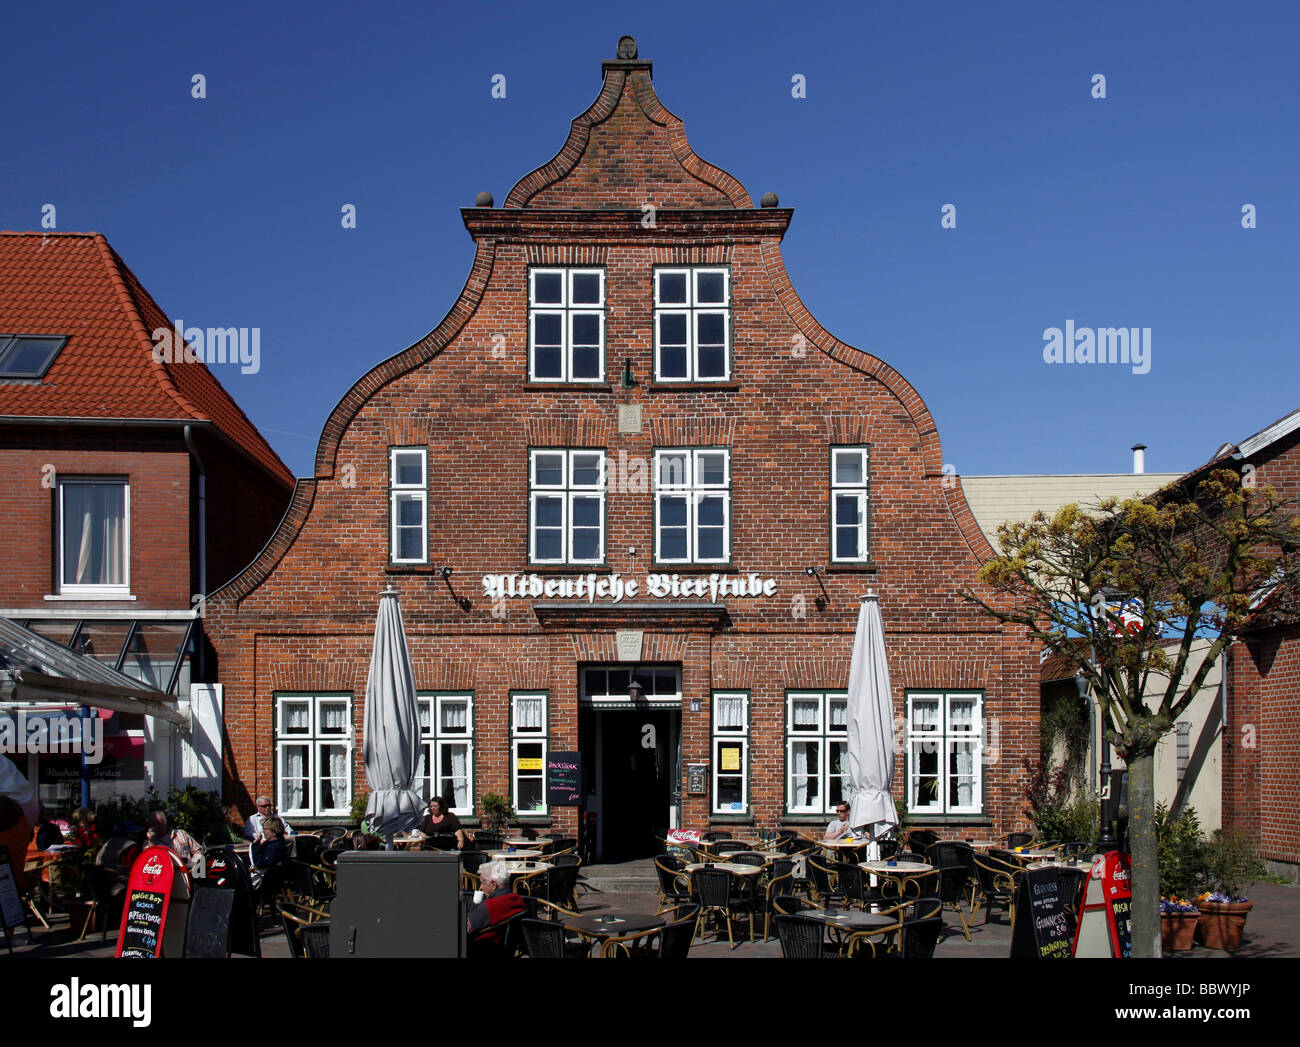 North German gabled house on the market square, Altdeutsche Bierstube tavern, Heiligenhafen, Schleswig-Holstein, Germany, Europe Stock Photo